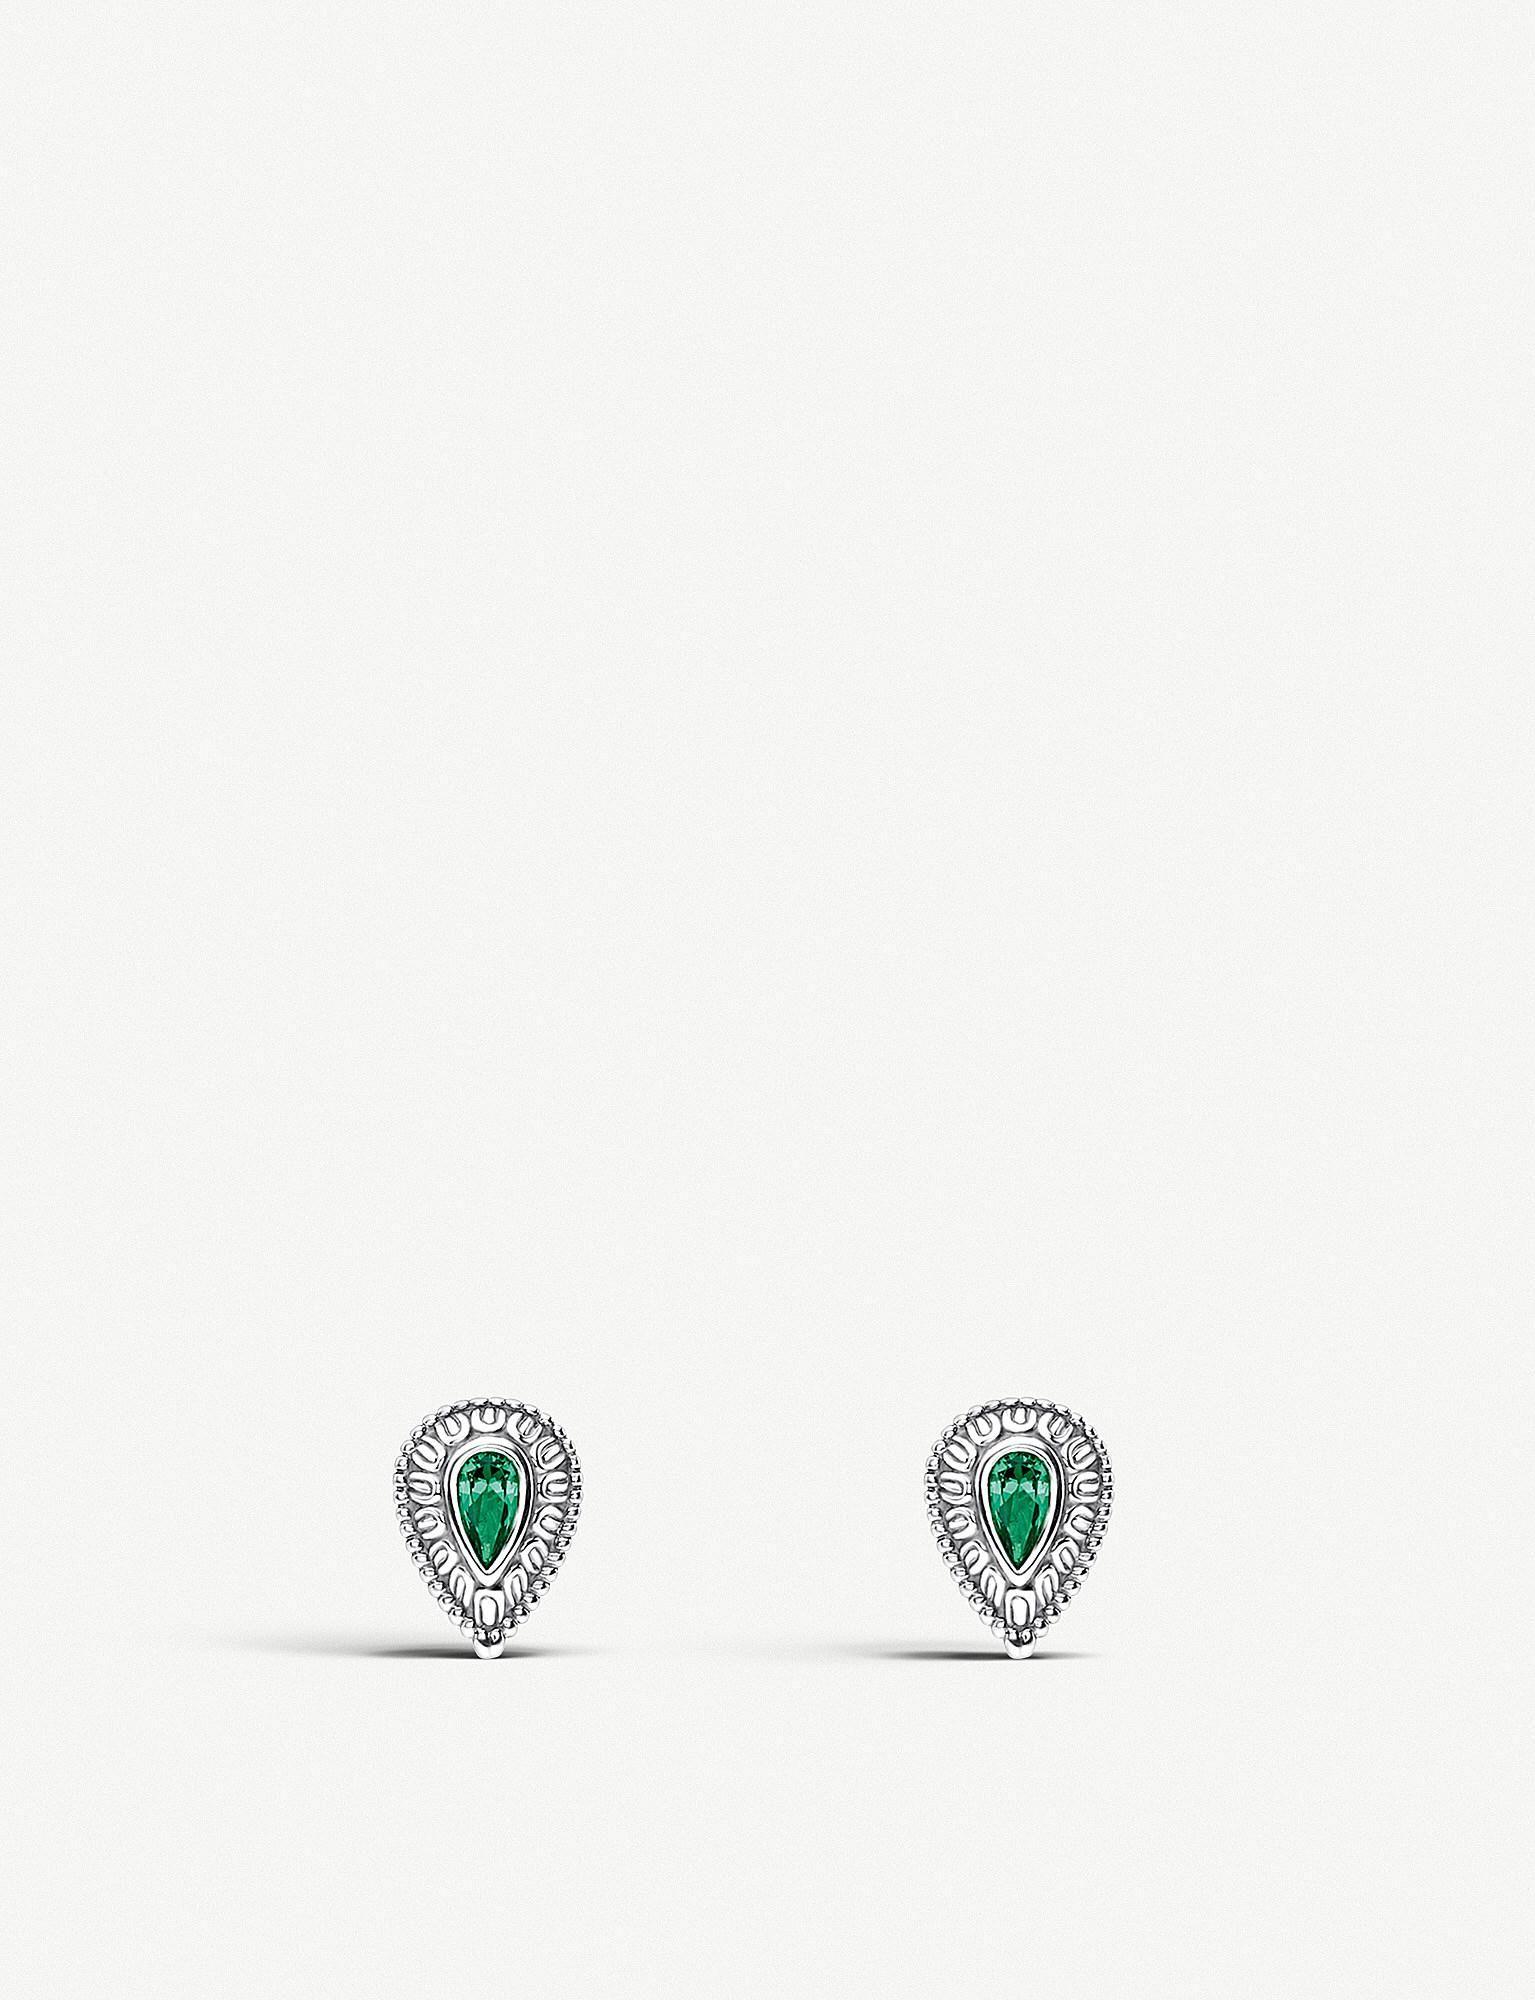 Green Teardrop Logo - Thomas Sabo Teardrop Sterling Silver And Green Stone Earrings in ...